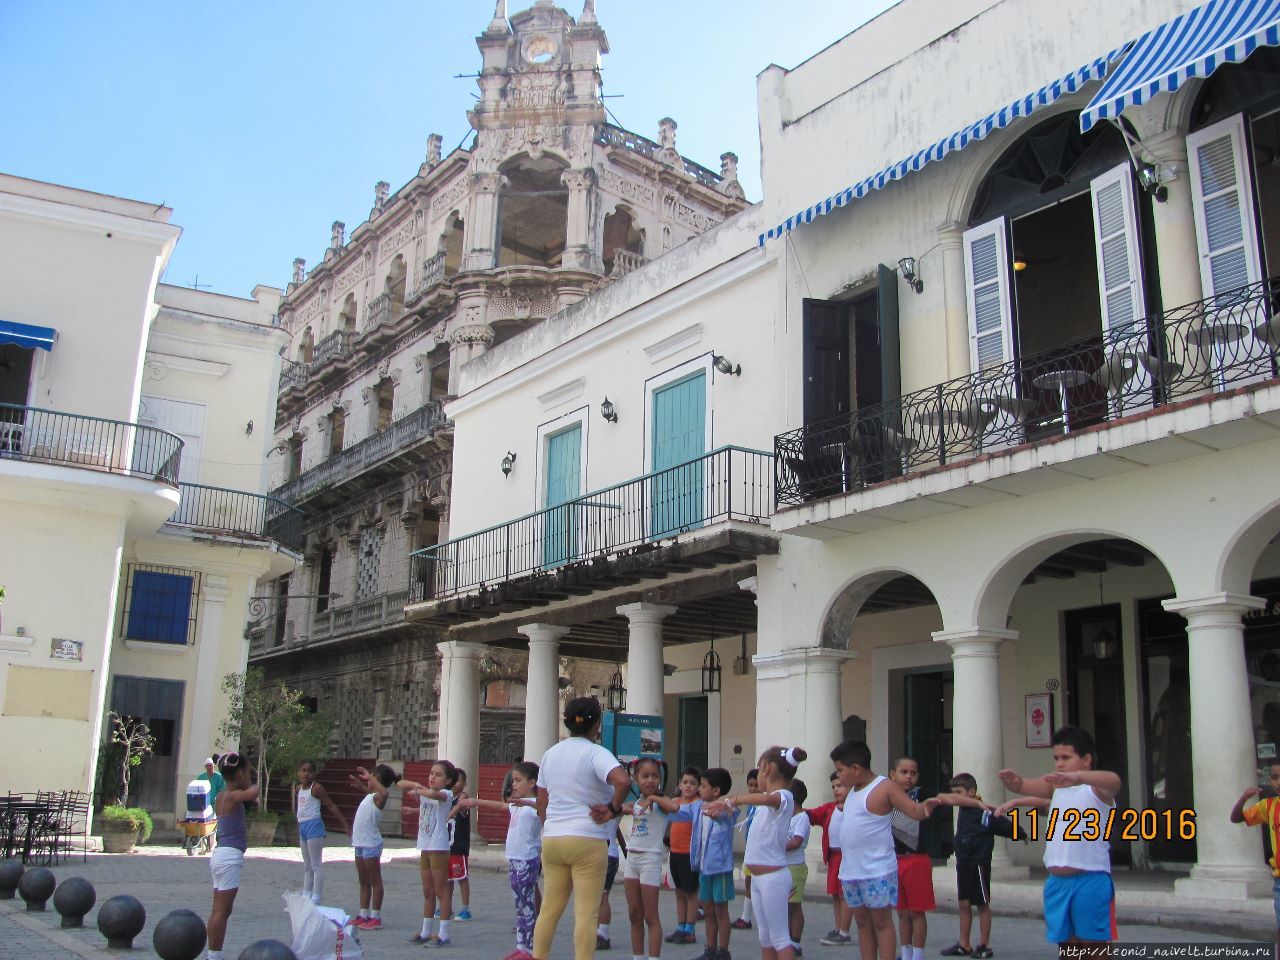 Гавана. Куба. О житье-бытье, еде-питье, культур-мультуре Ч2 Гавана, Куба